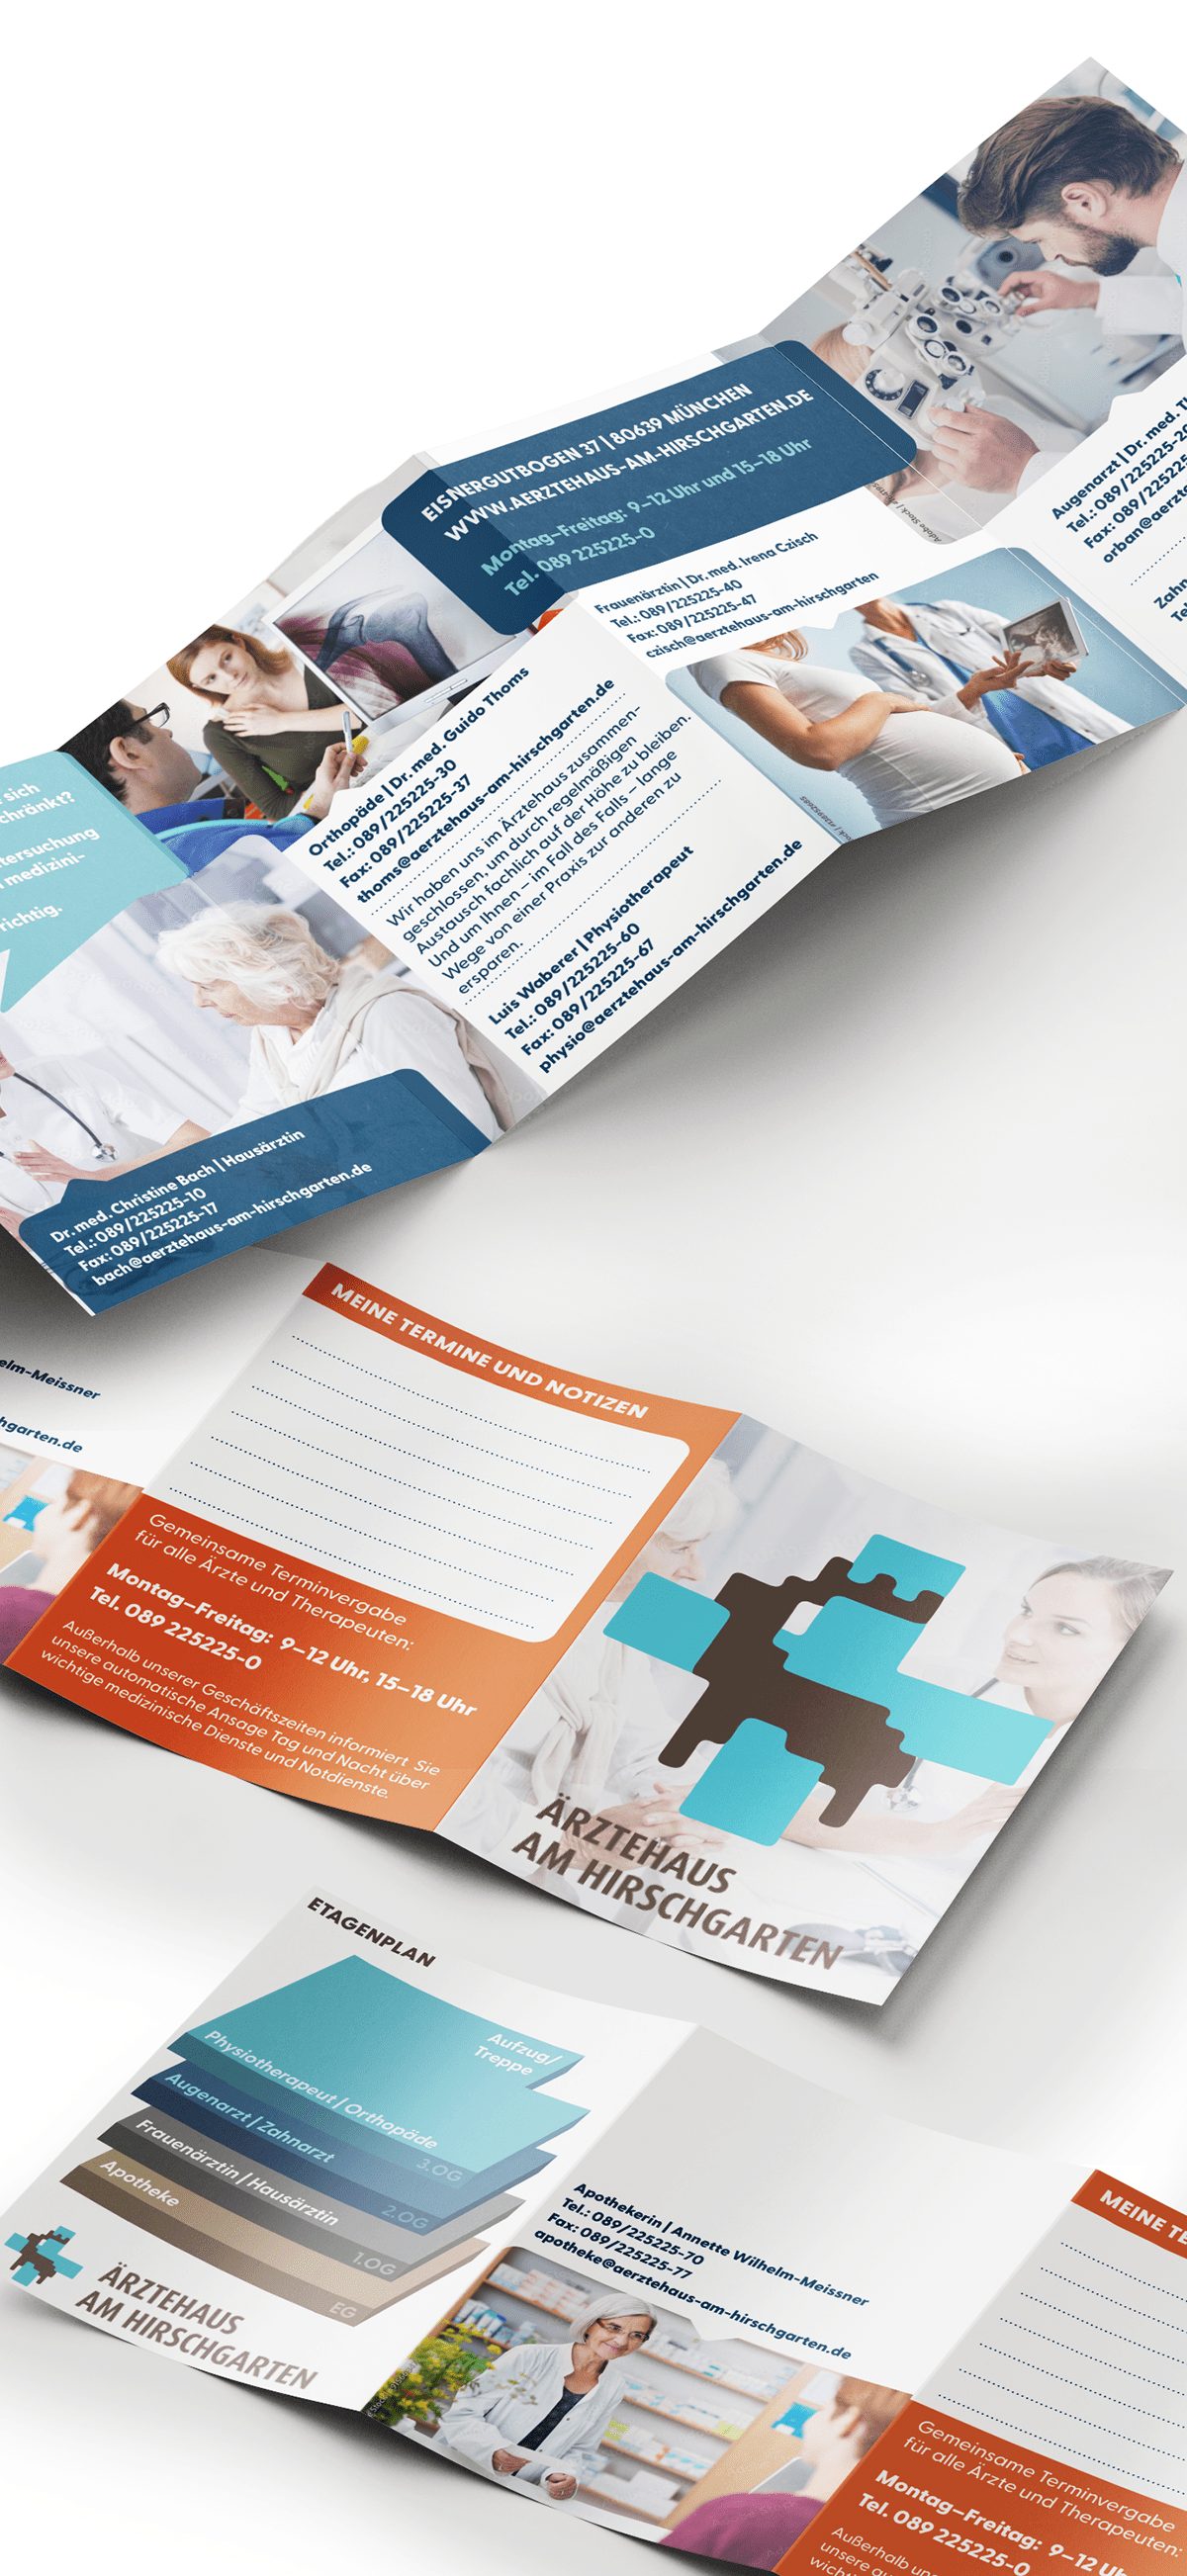 Abschlussprüfung brochure Broschüren design flyer Mediengestalter prüfung Zwischenprüfung